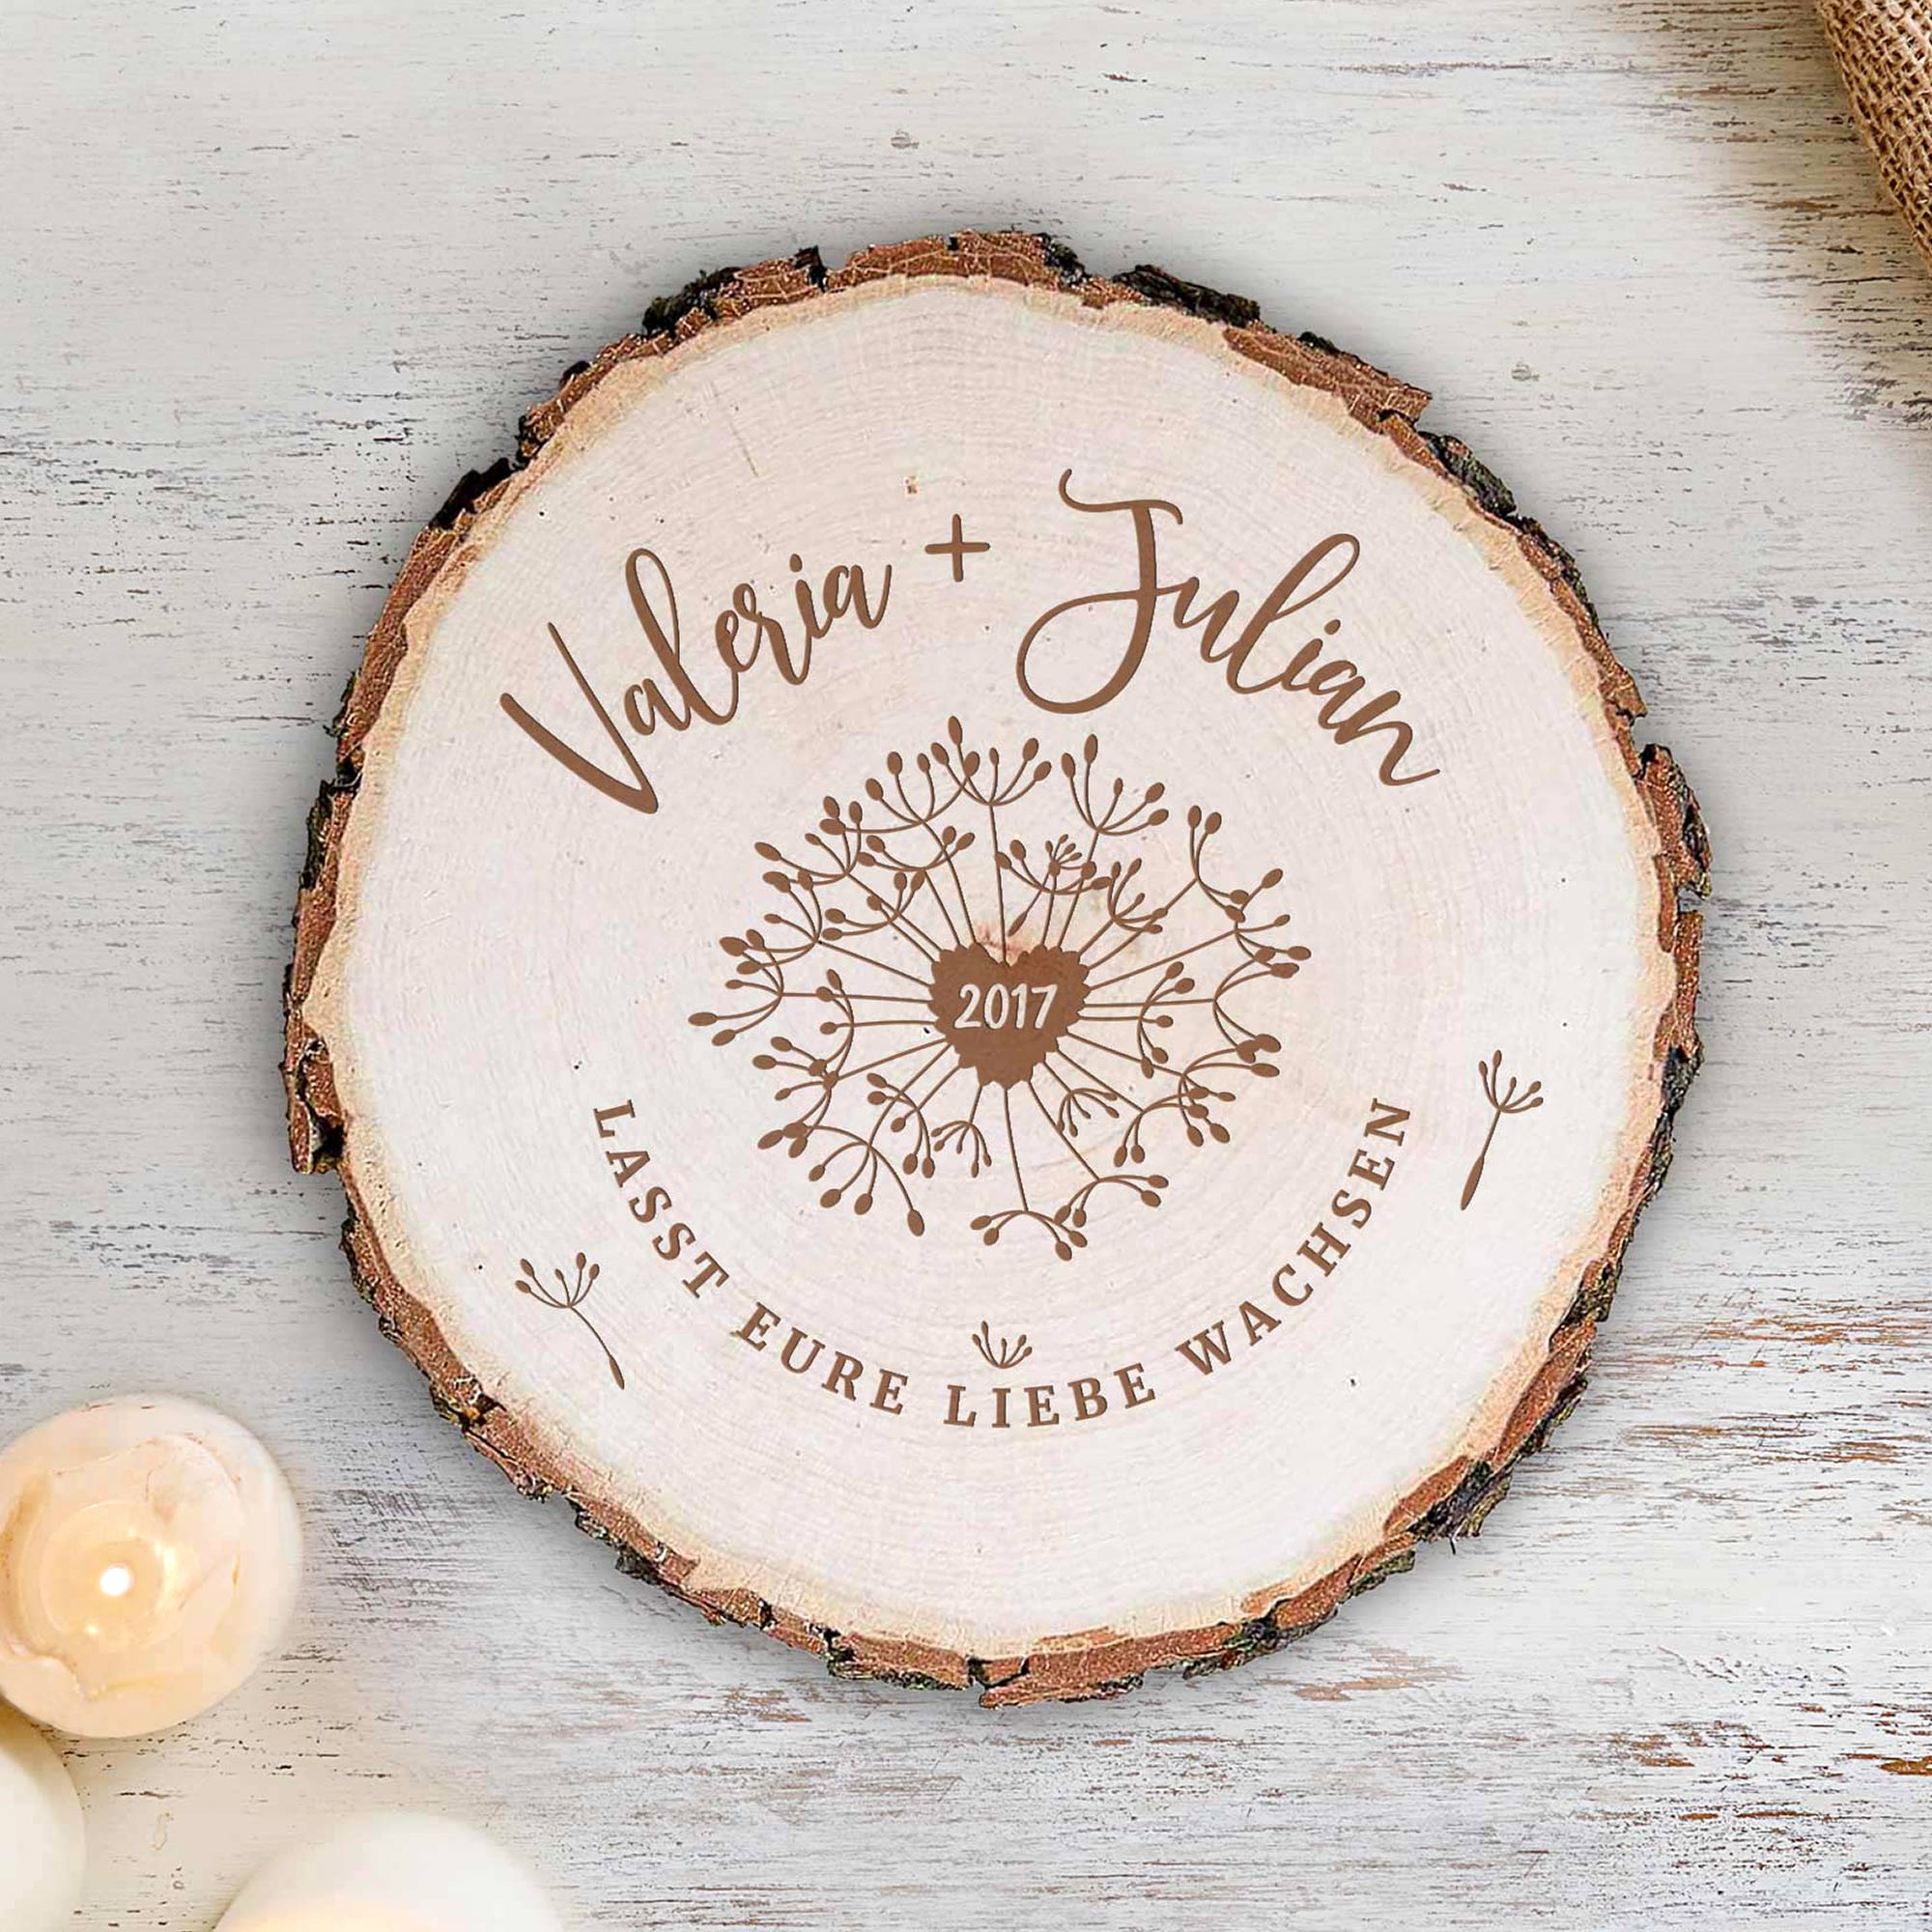 Personalisierte Baumscheibe als Geschenk für Paare & Hochzeitsdeko, Holzscheibe mit Namensgravur als dekorativer Liebesbeweis und Hochzeitsgeschenk